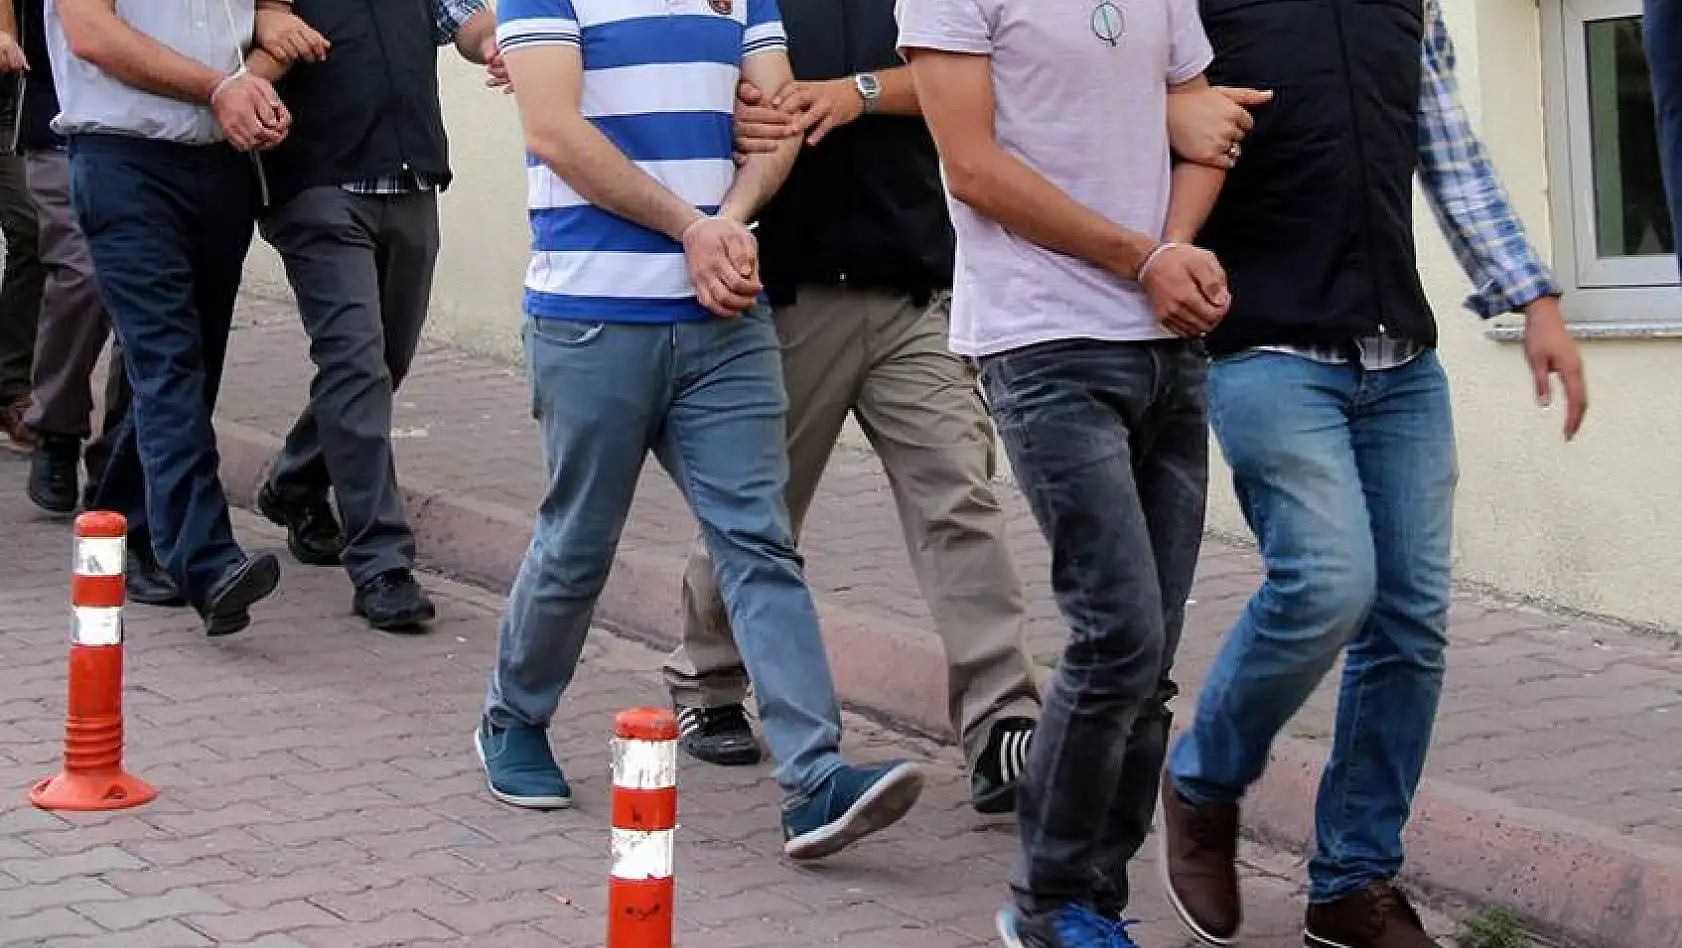 FETÖ/PDY'den gözaltına alınan 16 kişi adliyeye sevk edildi